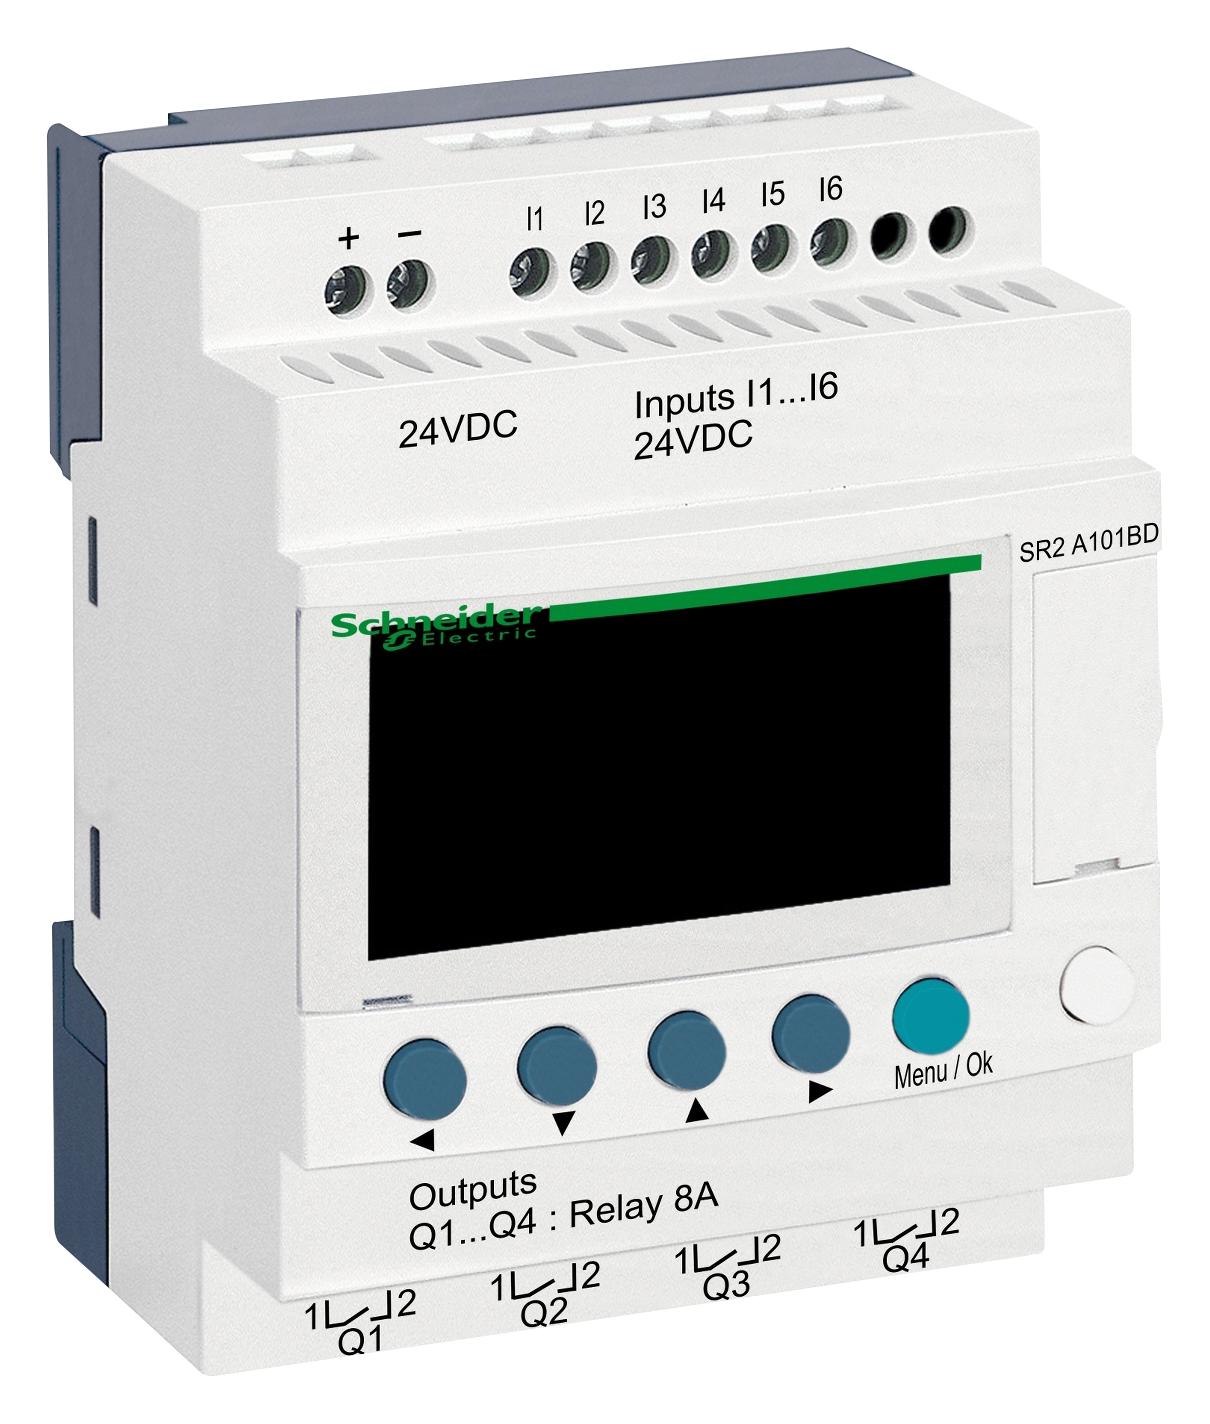 SR2A101BD COMPACT SMART RELAY, 10 I/O, 24V SCHNEIDER ELECTRIC